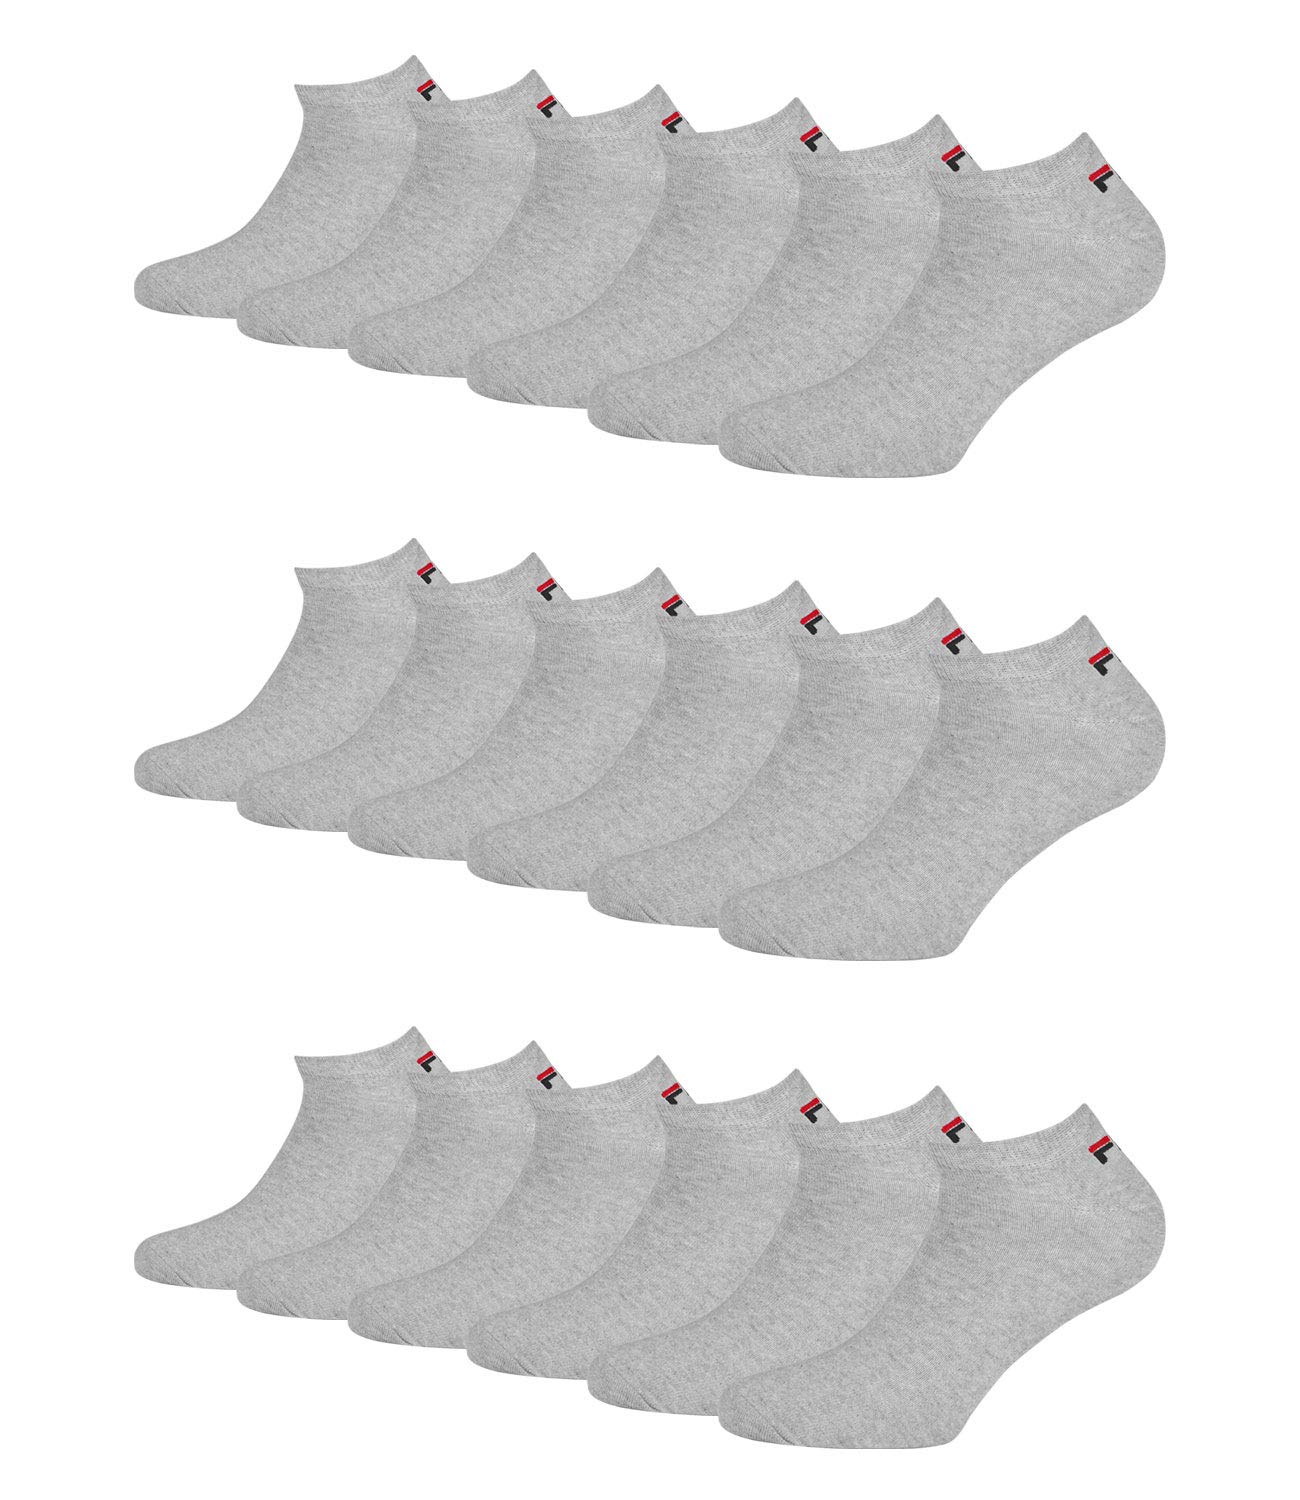 FILA 9 Paar Socken, Invisible Sneakers Unisex, einfarbig, 35-46 (3x 3er Pack) (Grau, 39-42 (6-8 UK))